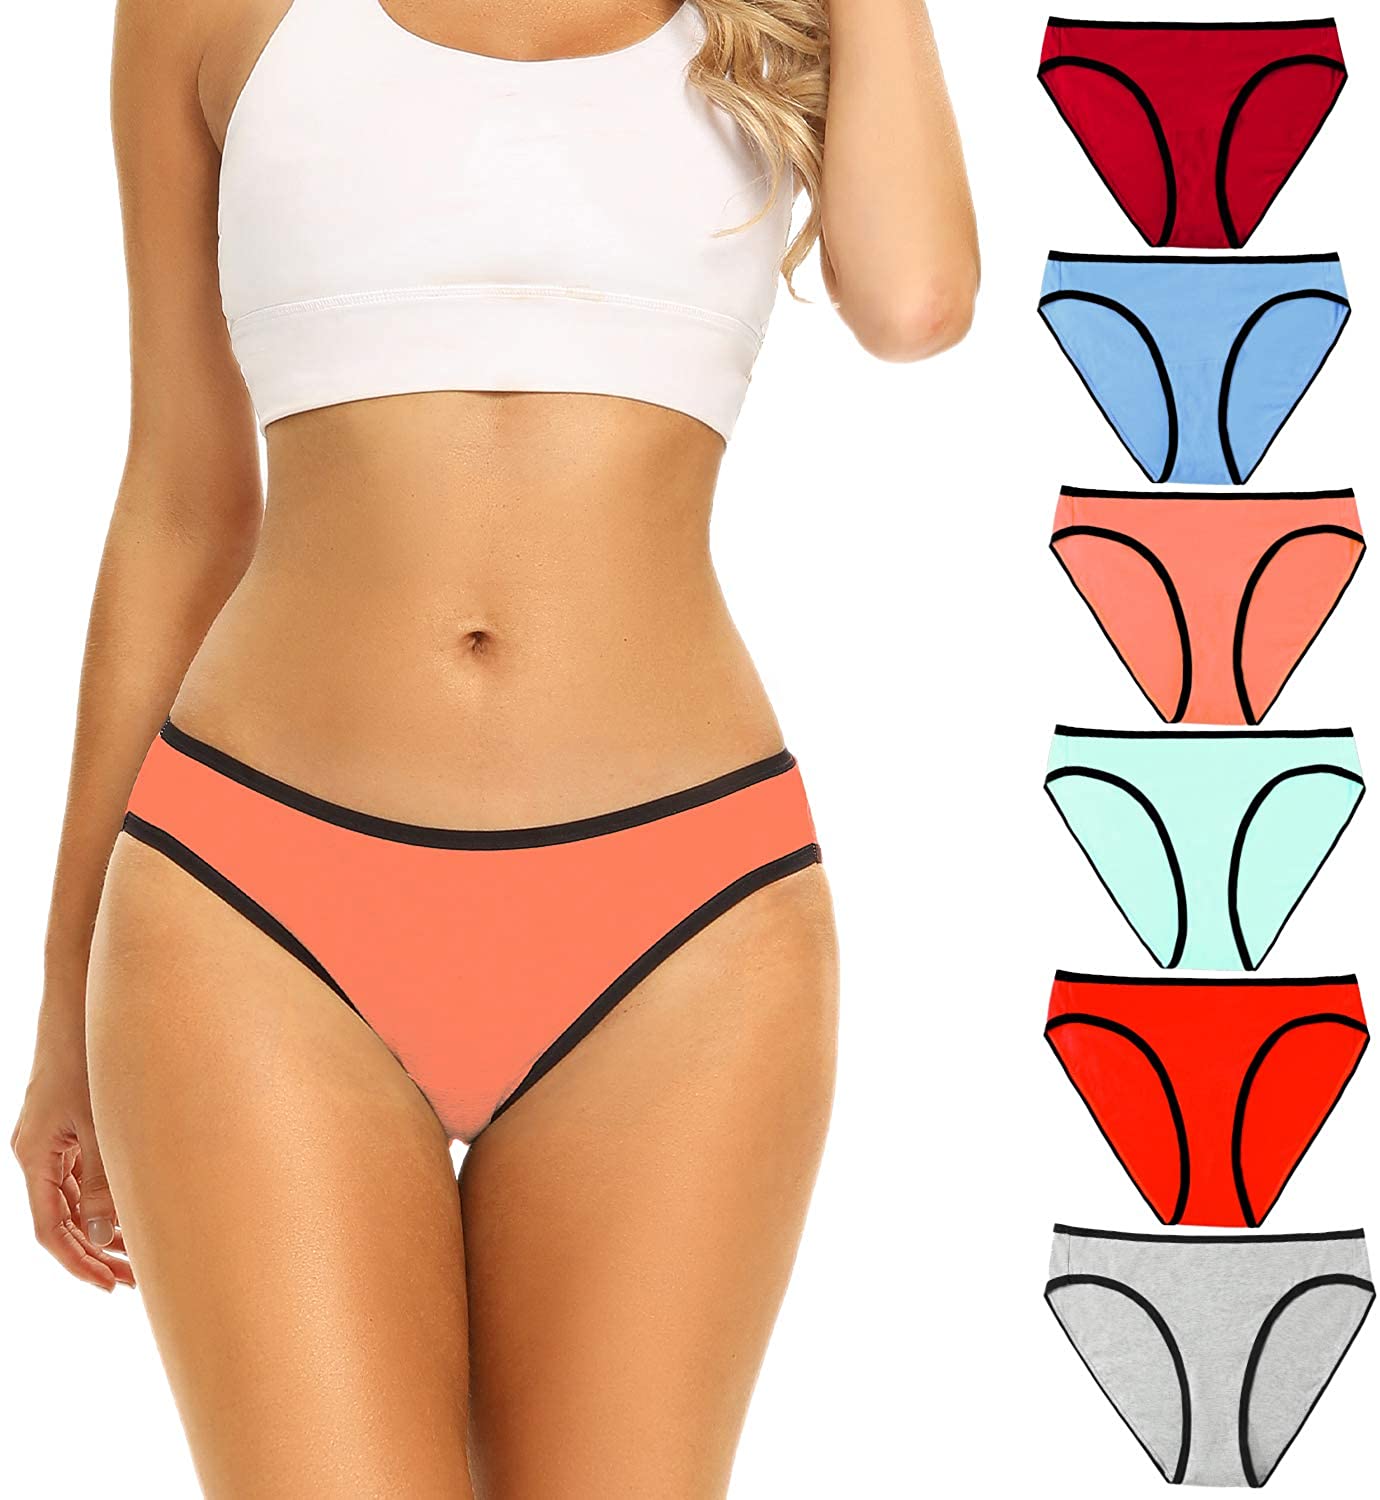 POKARLA Women's Hi-Cut Bikini Panties Soft Stretch Cotton